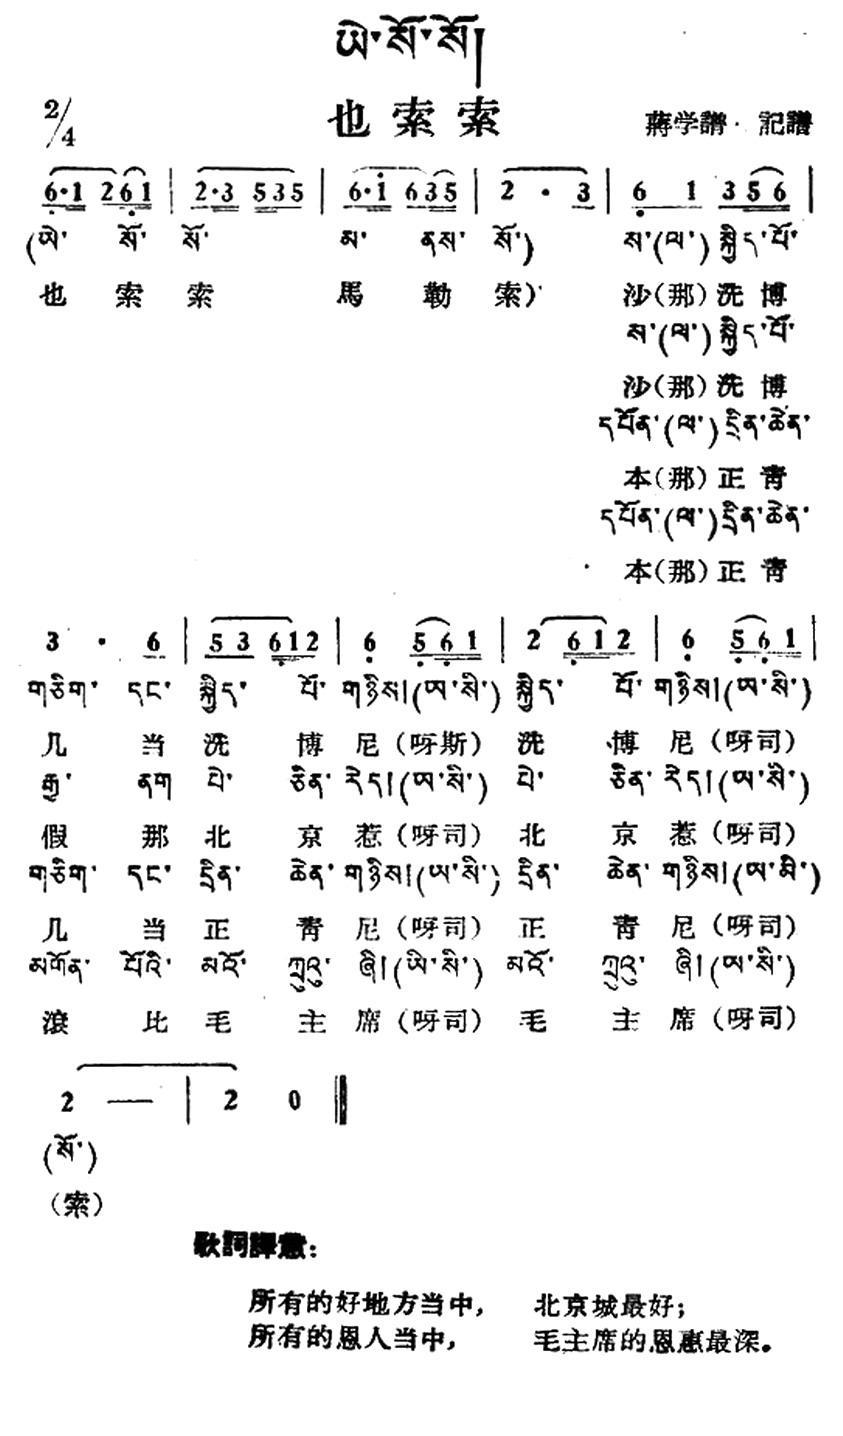 民歌曲谱 也索索（藏族民歌 藏文及音译版）